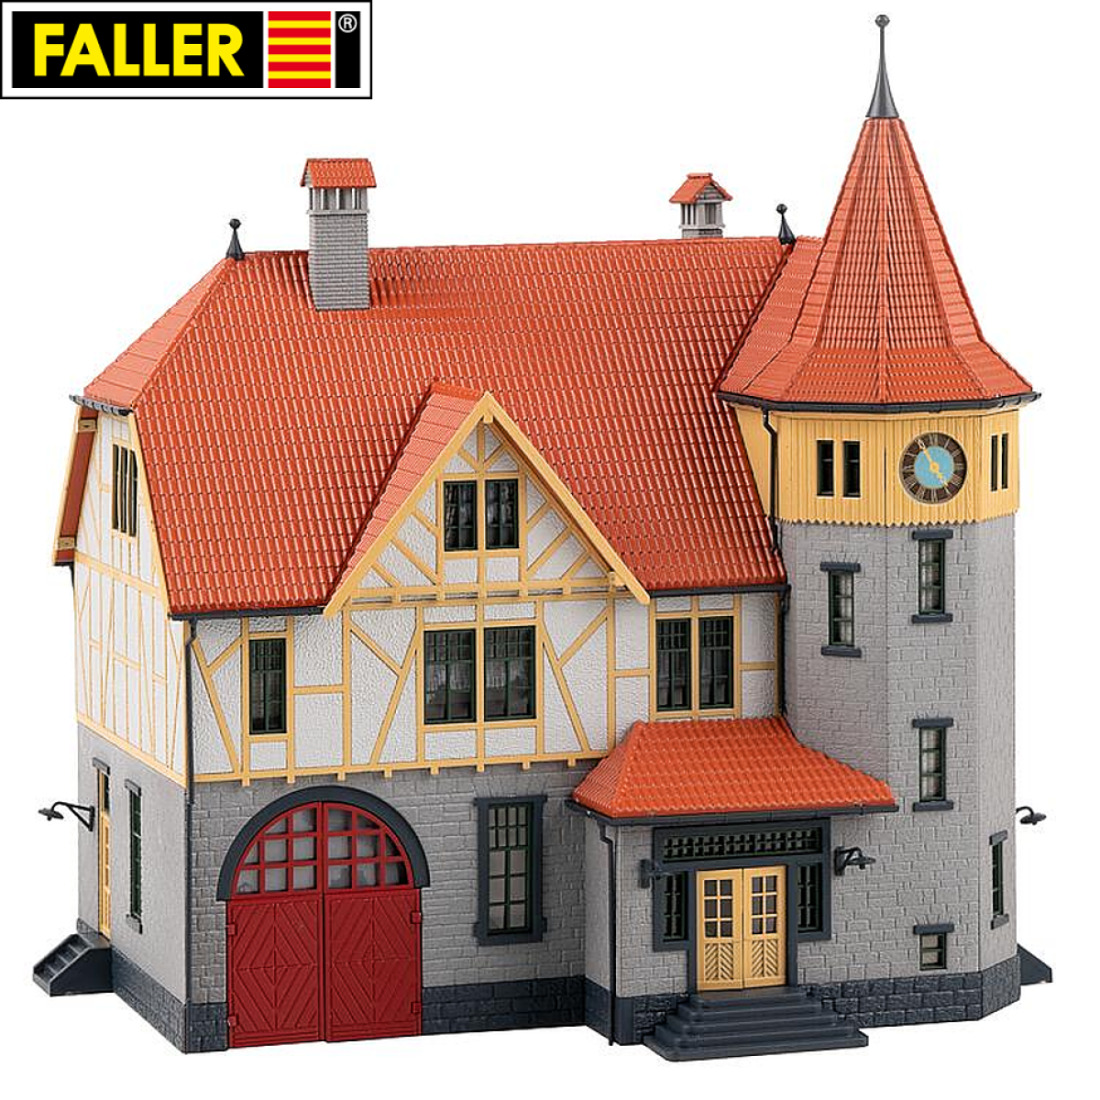 Faller H0 130649 Rathaus mit Feuerwehrgarage 